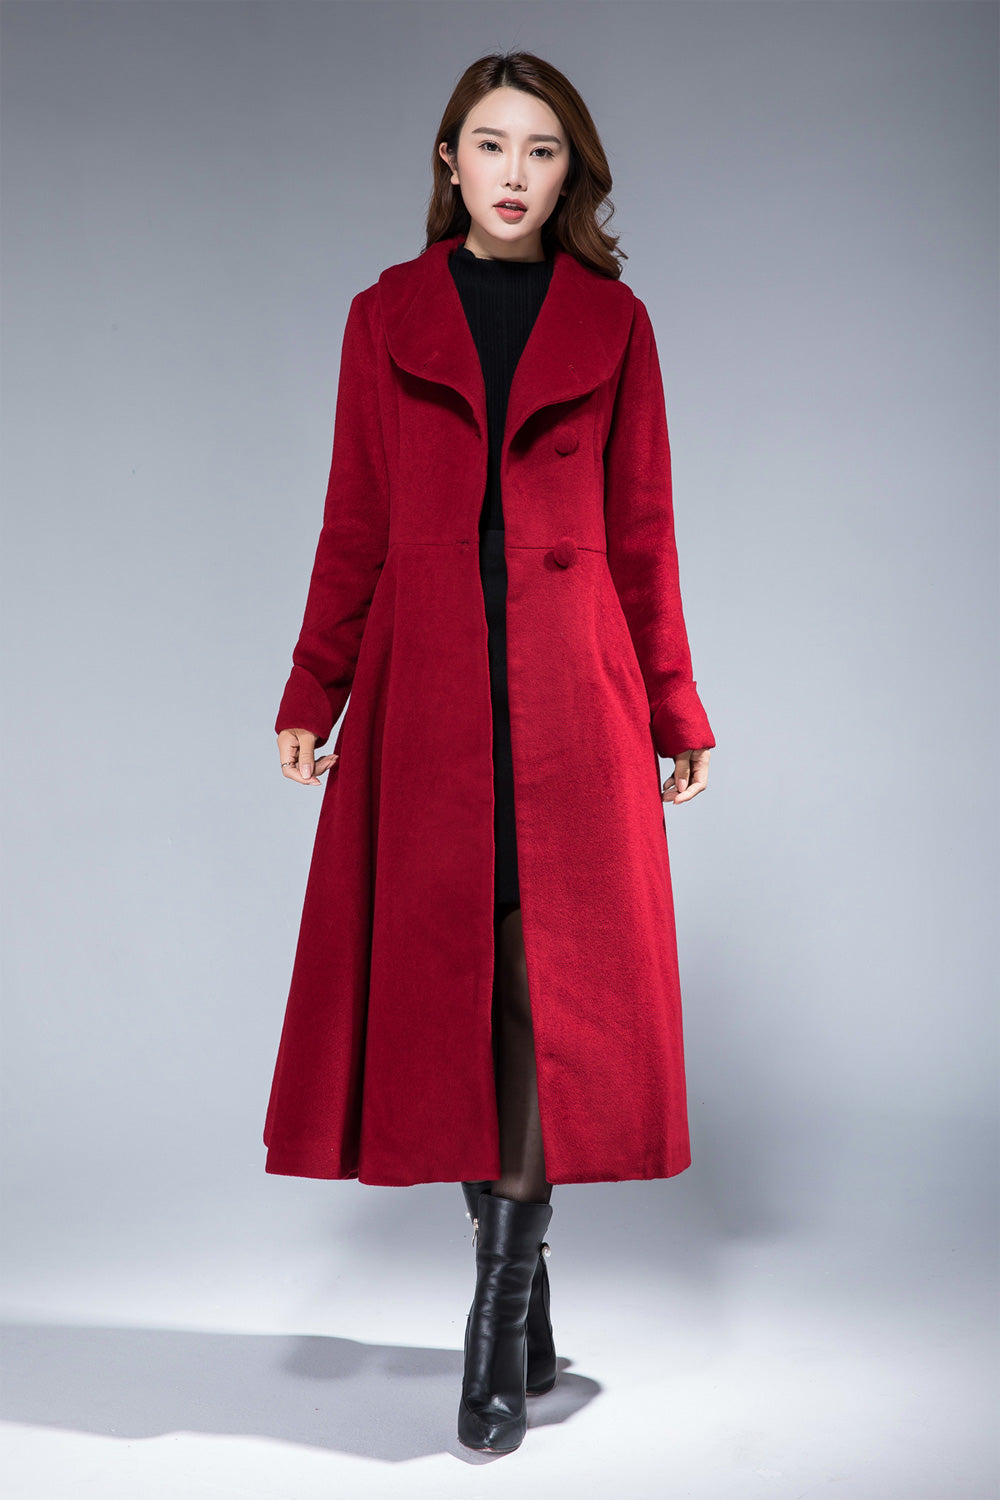 Warm Winter Coat, Wool Coat, Dress Coat, Woman Coat, Fit and Flare Coat,  Long Wool Coat, Winter Coat, Warm Wool Coat, Custom Coat 1860 -  Israel